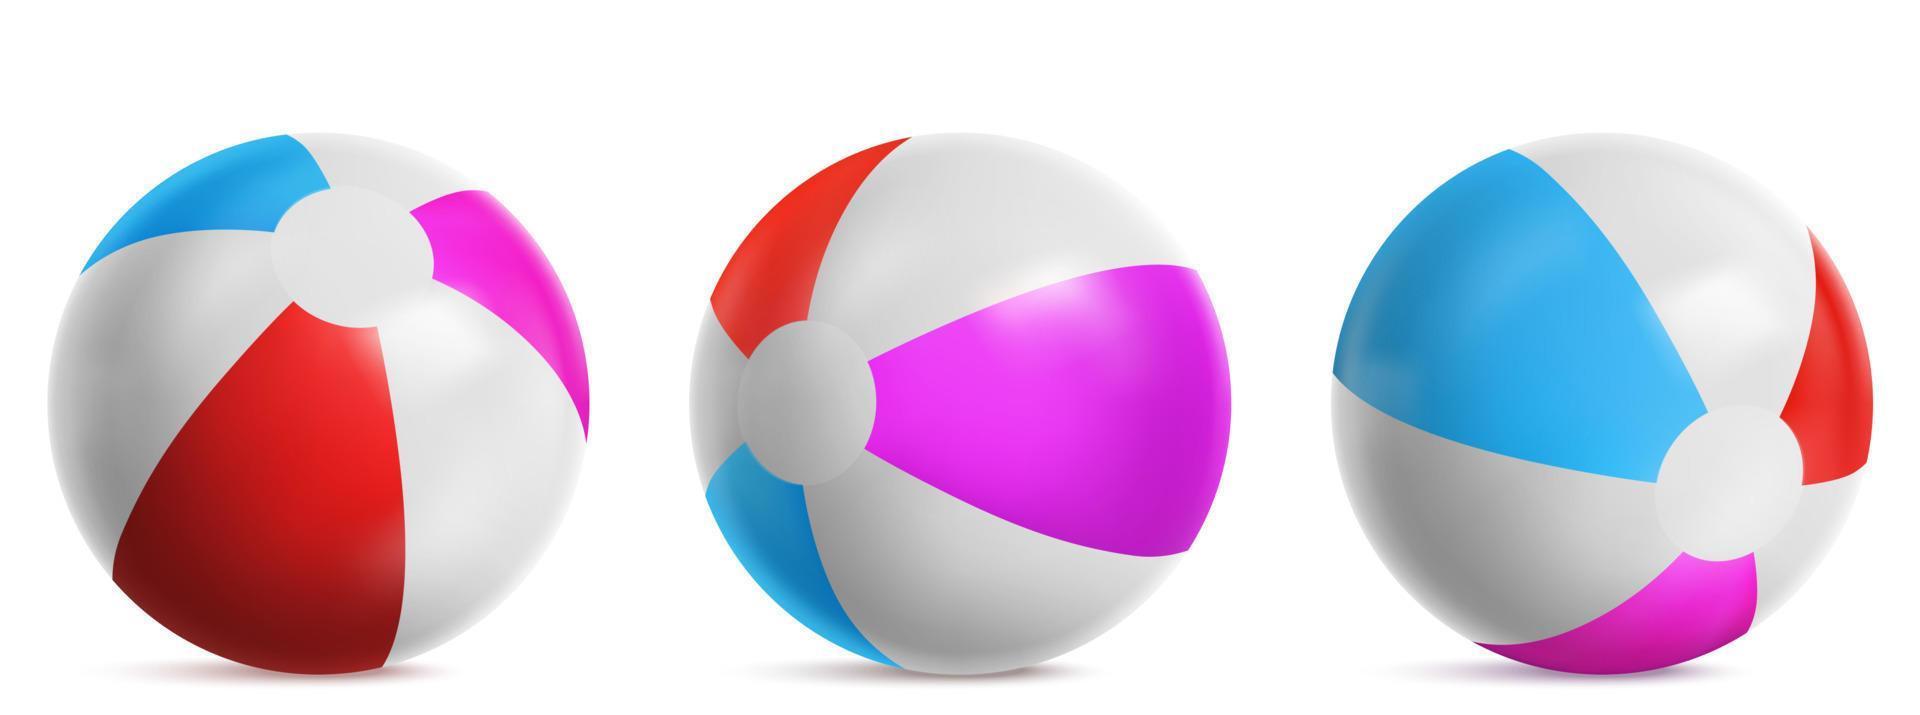 ballon de plage gonflable pour jouer en mer ou en piscine vecteur